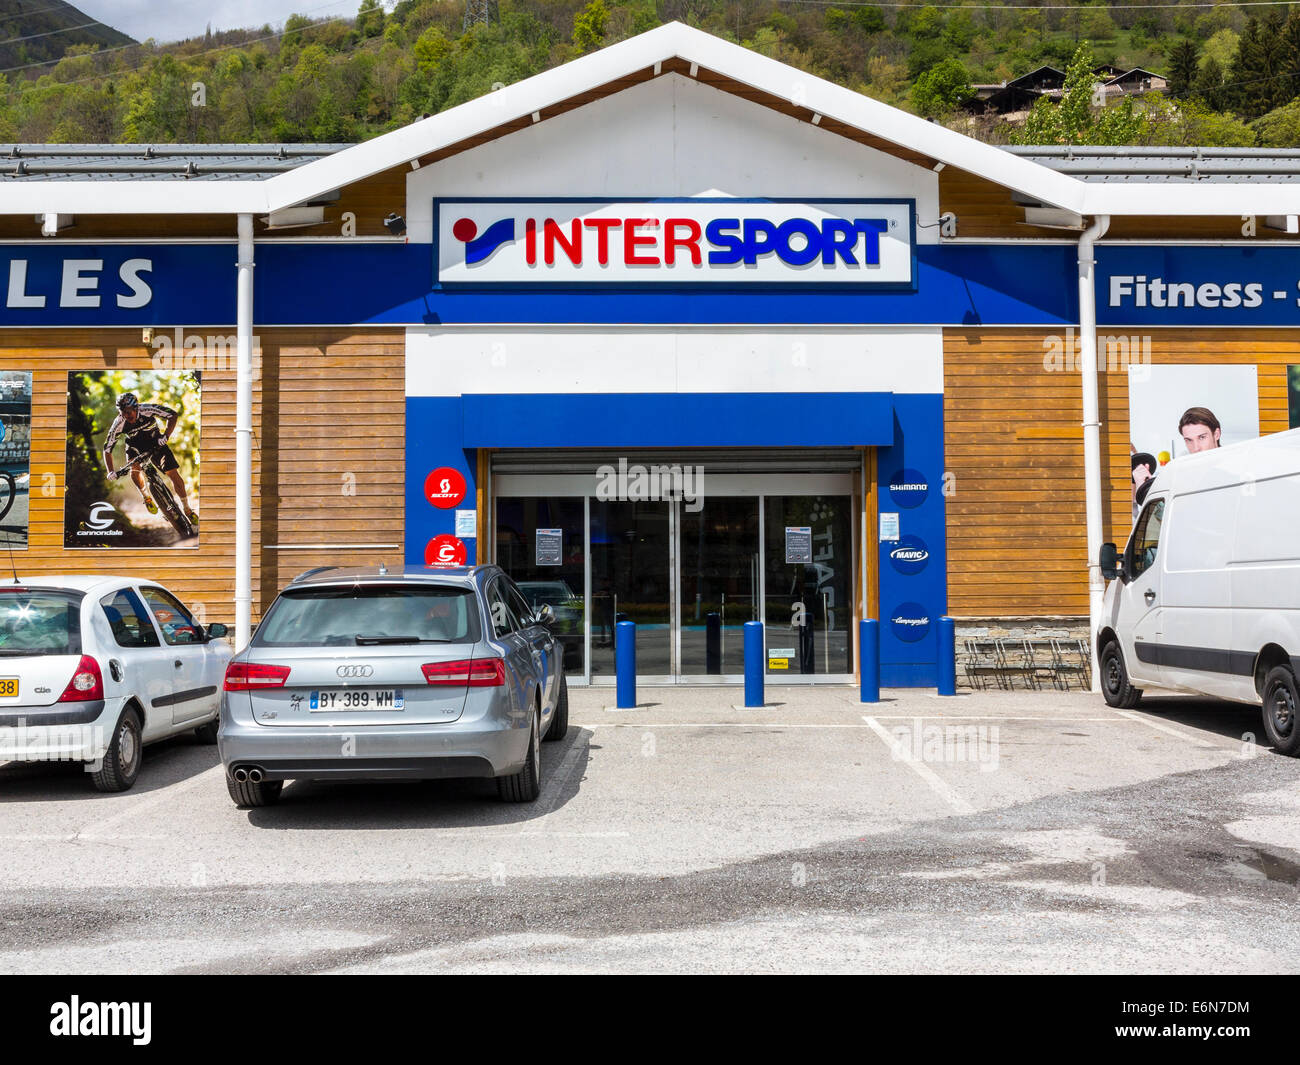 Tienda de deportes intersport fotografías e imágenes de alta resolución -  Alamy